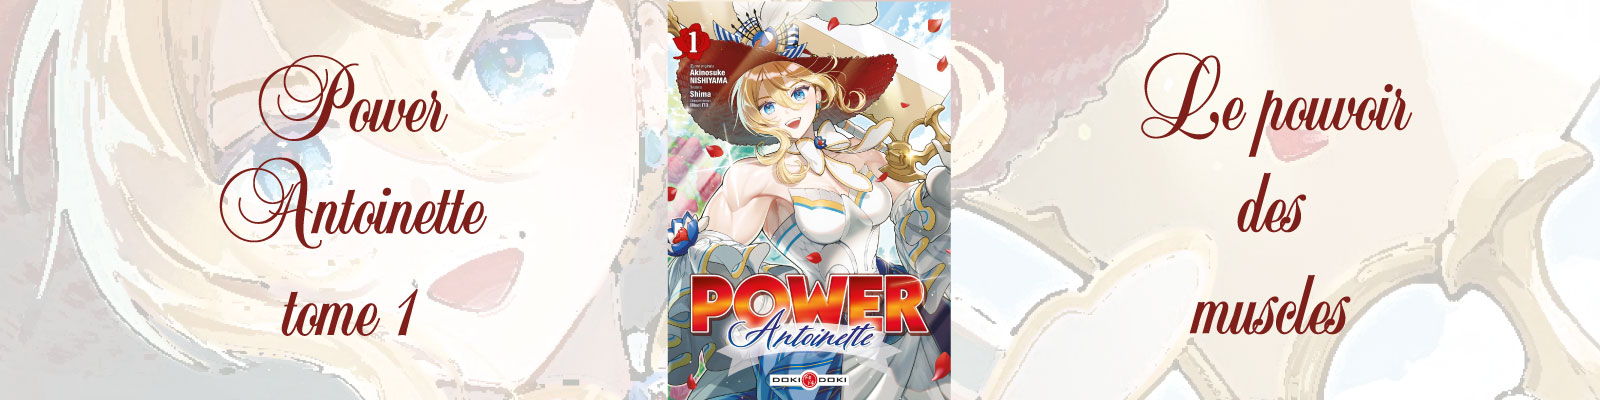 Power Antoinette-Vol.1-2